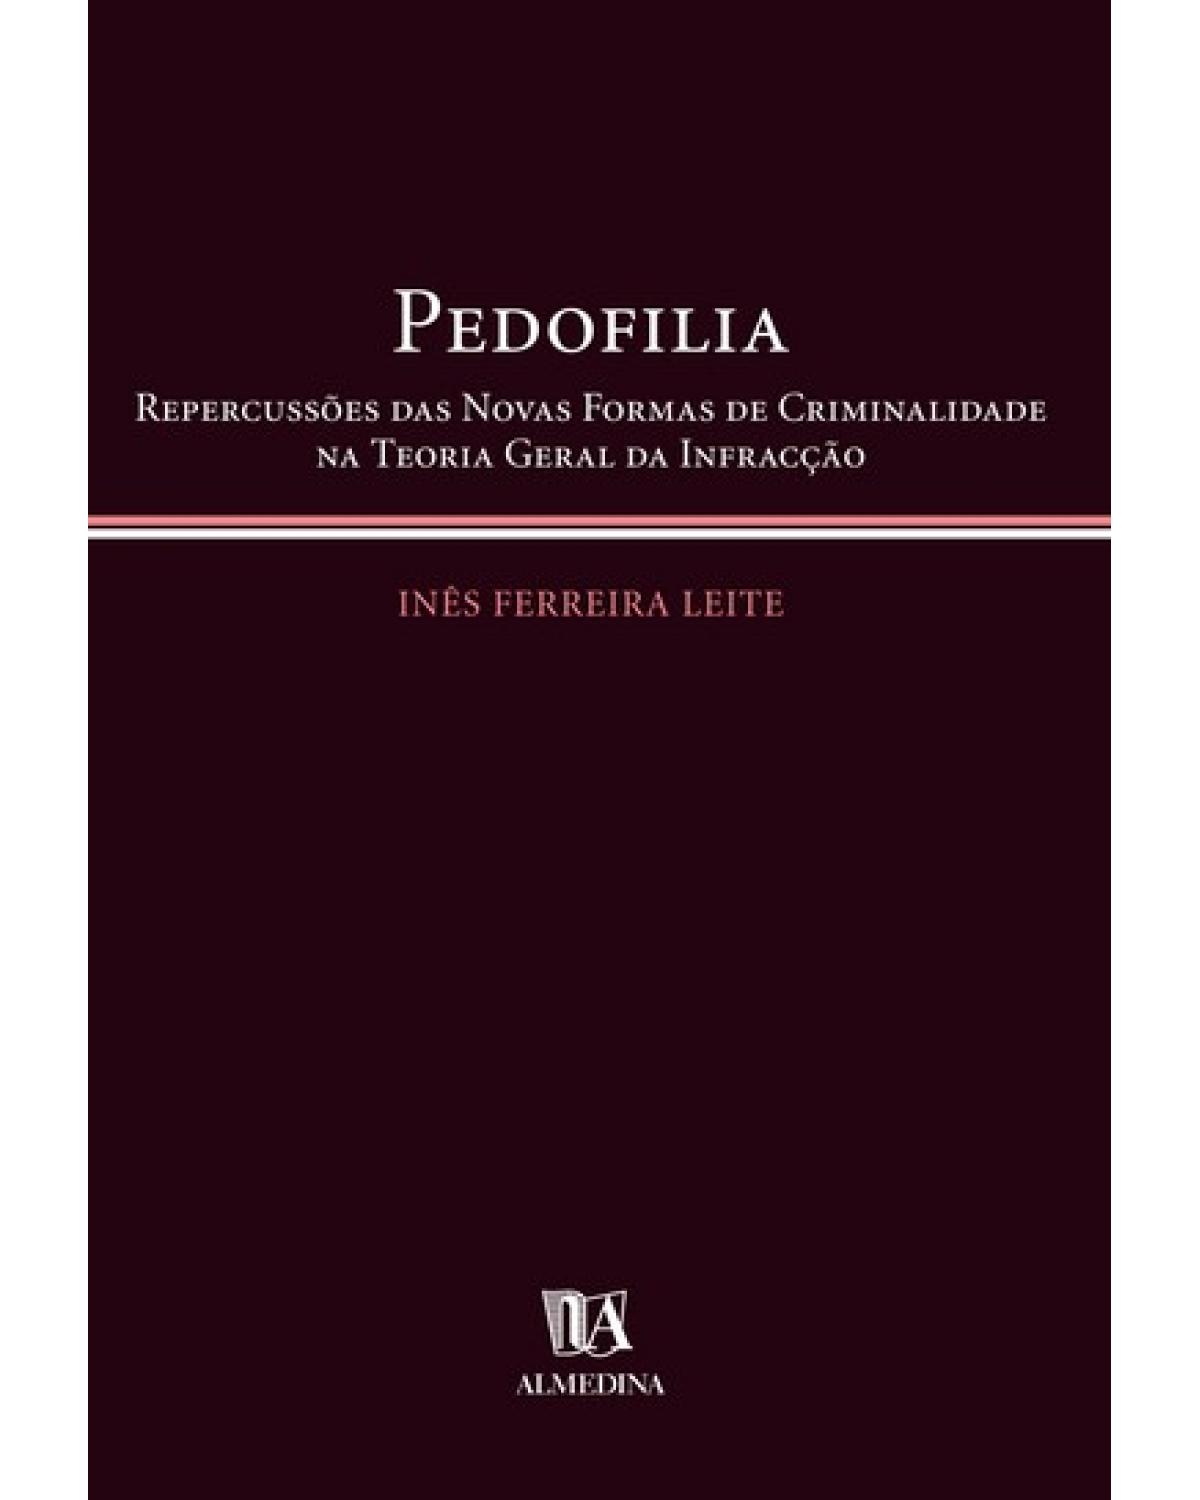 Pedofilia - repercussões das novas formas de criminalidade na teoria geral da infração - 1ª Edição | 2004